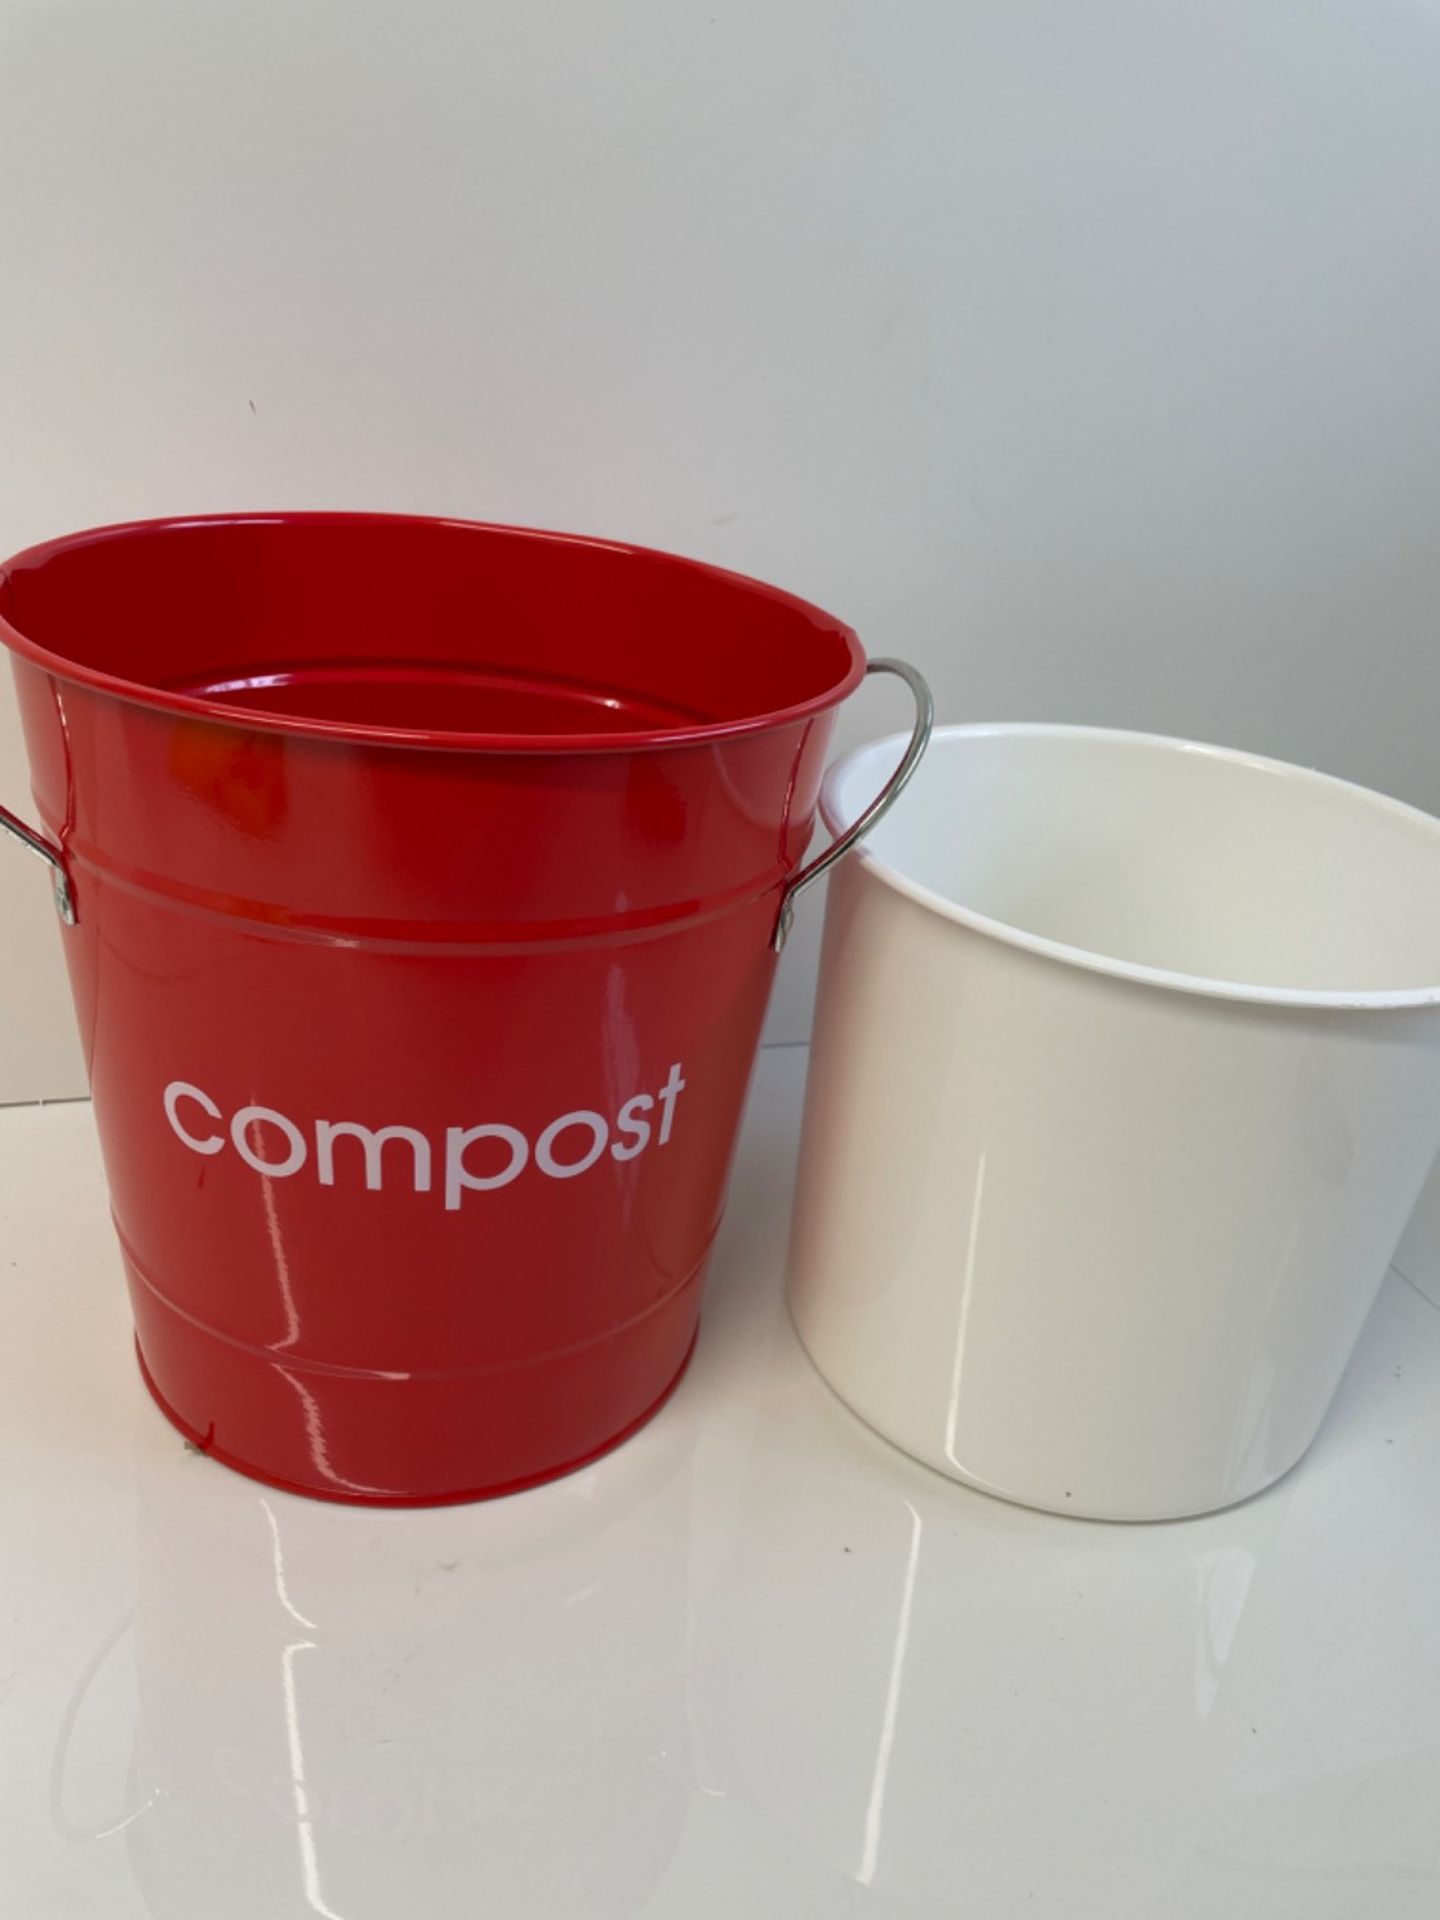 Premier Housewares 510017 Compost Bin Red Compost Bin Kitchen Steel Garden Compost Bin Outdoor Comp - Image 3 of 3